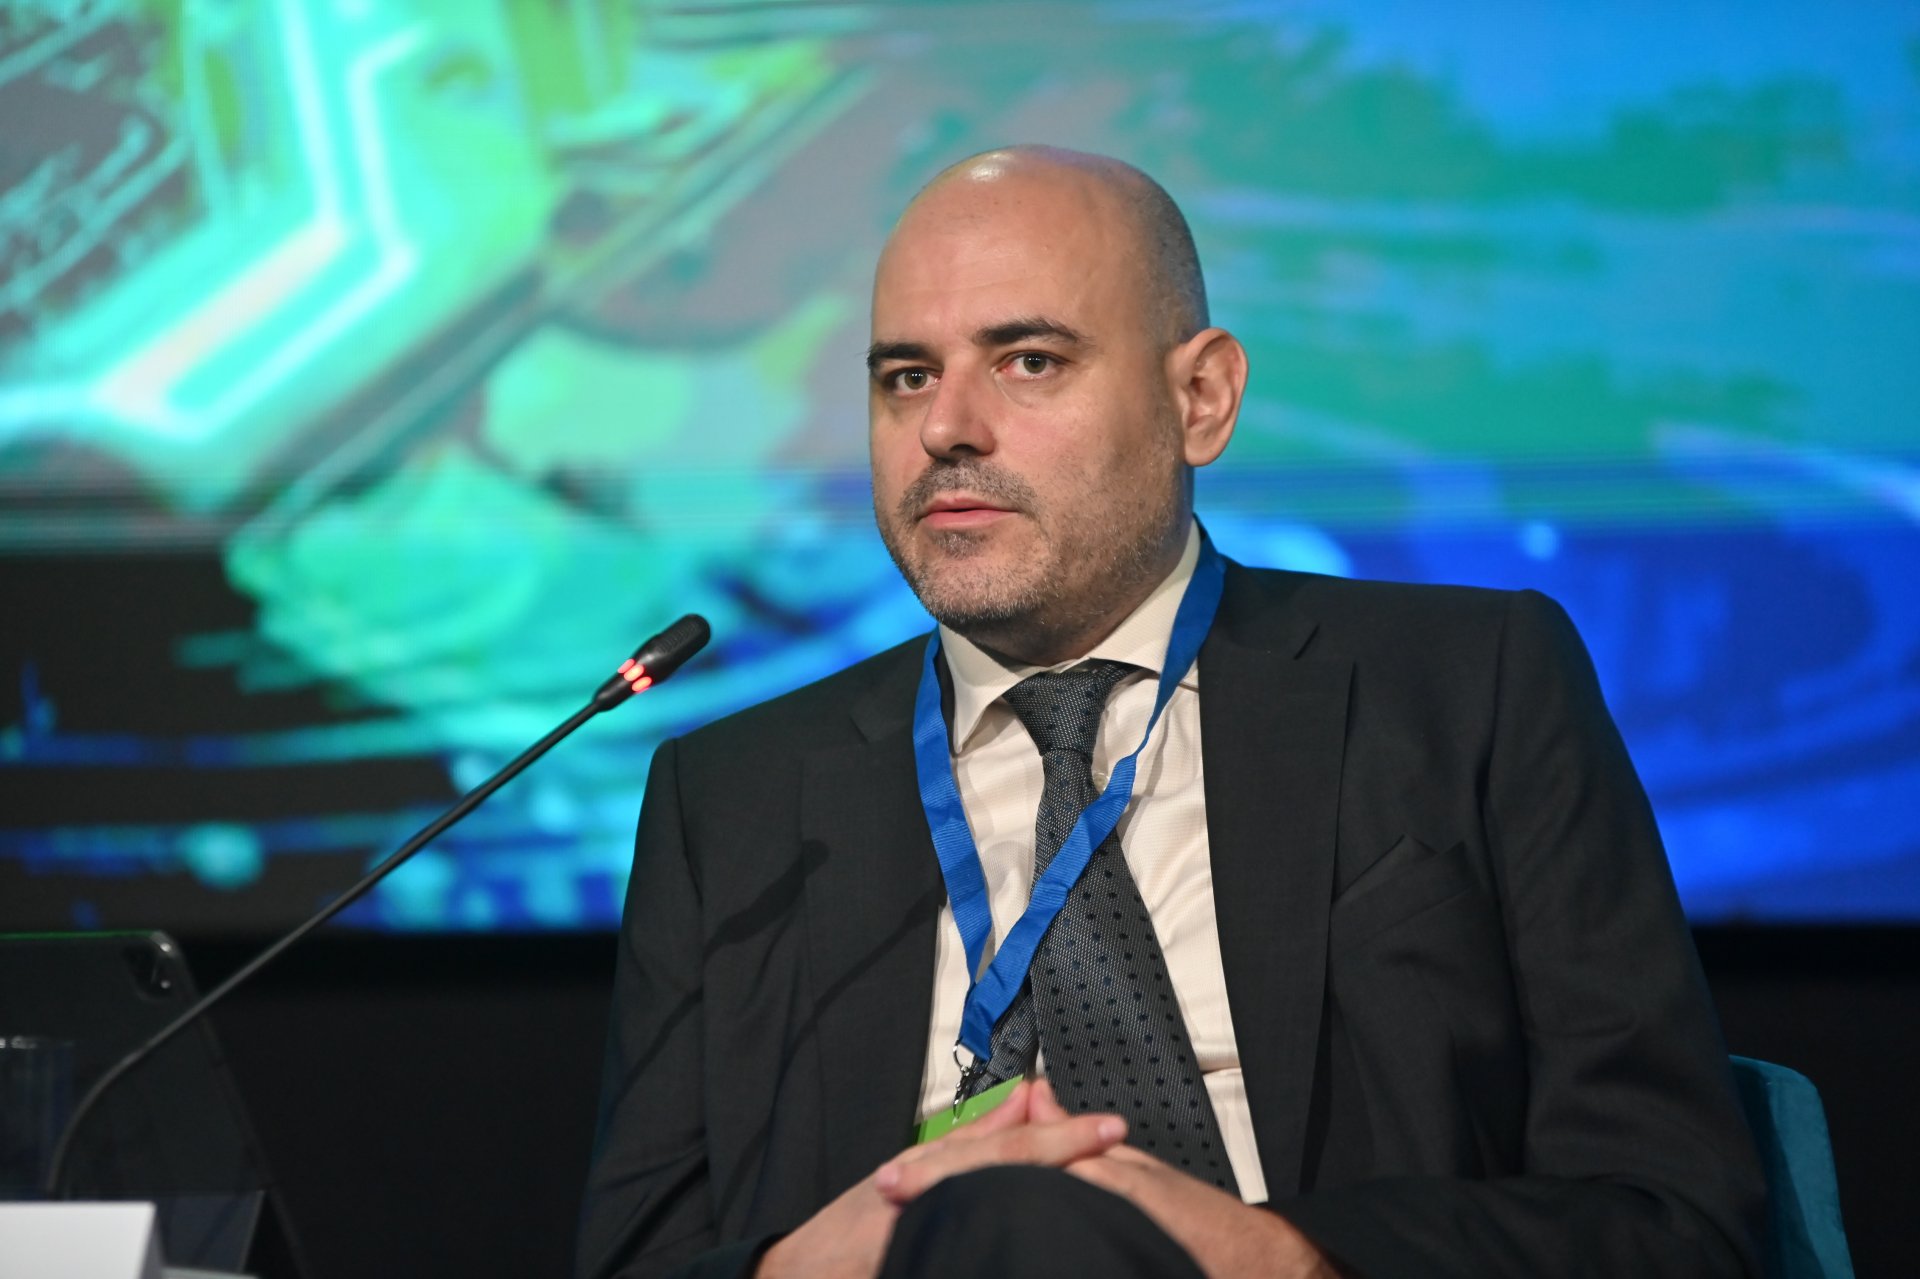 Цанко Арабаджиев, член на УС и изпълнителен директор на Българската банка за развитие